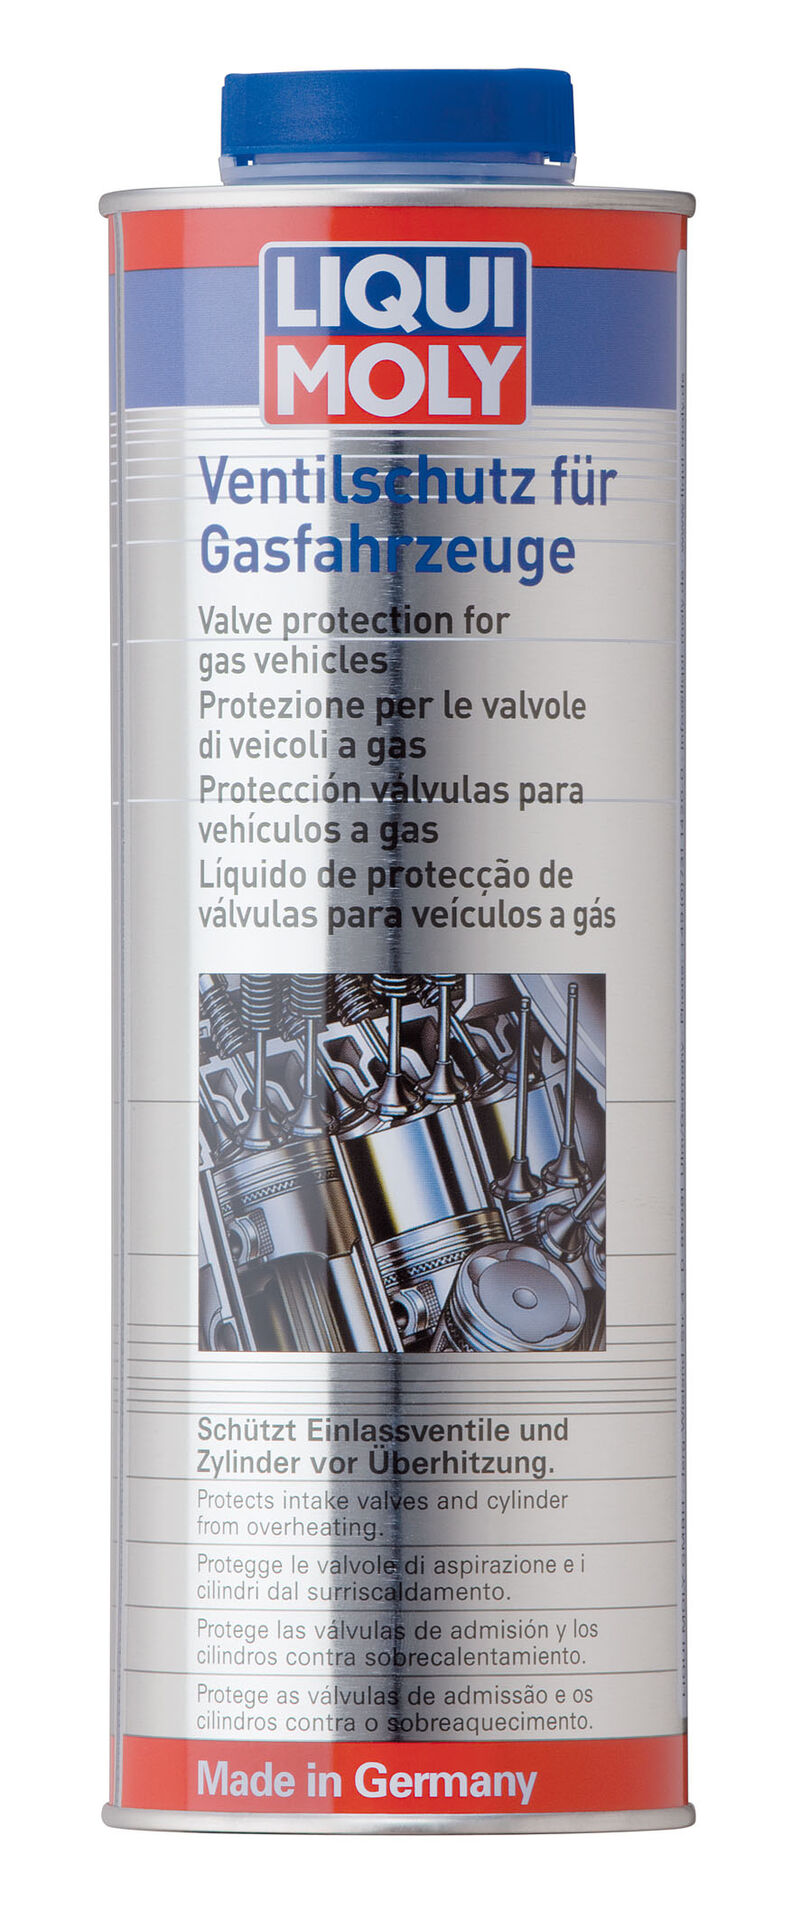 1 Liter LIQUI MOLY 4012 Ventilschutz für Gasfahrzeuge Additiv